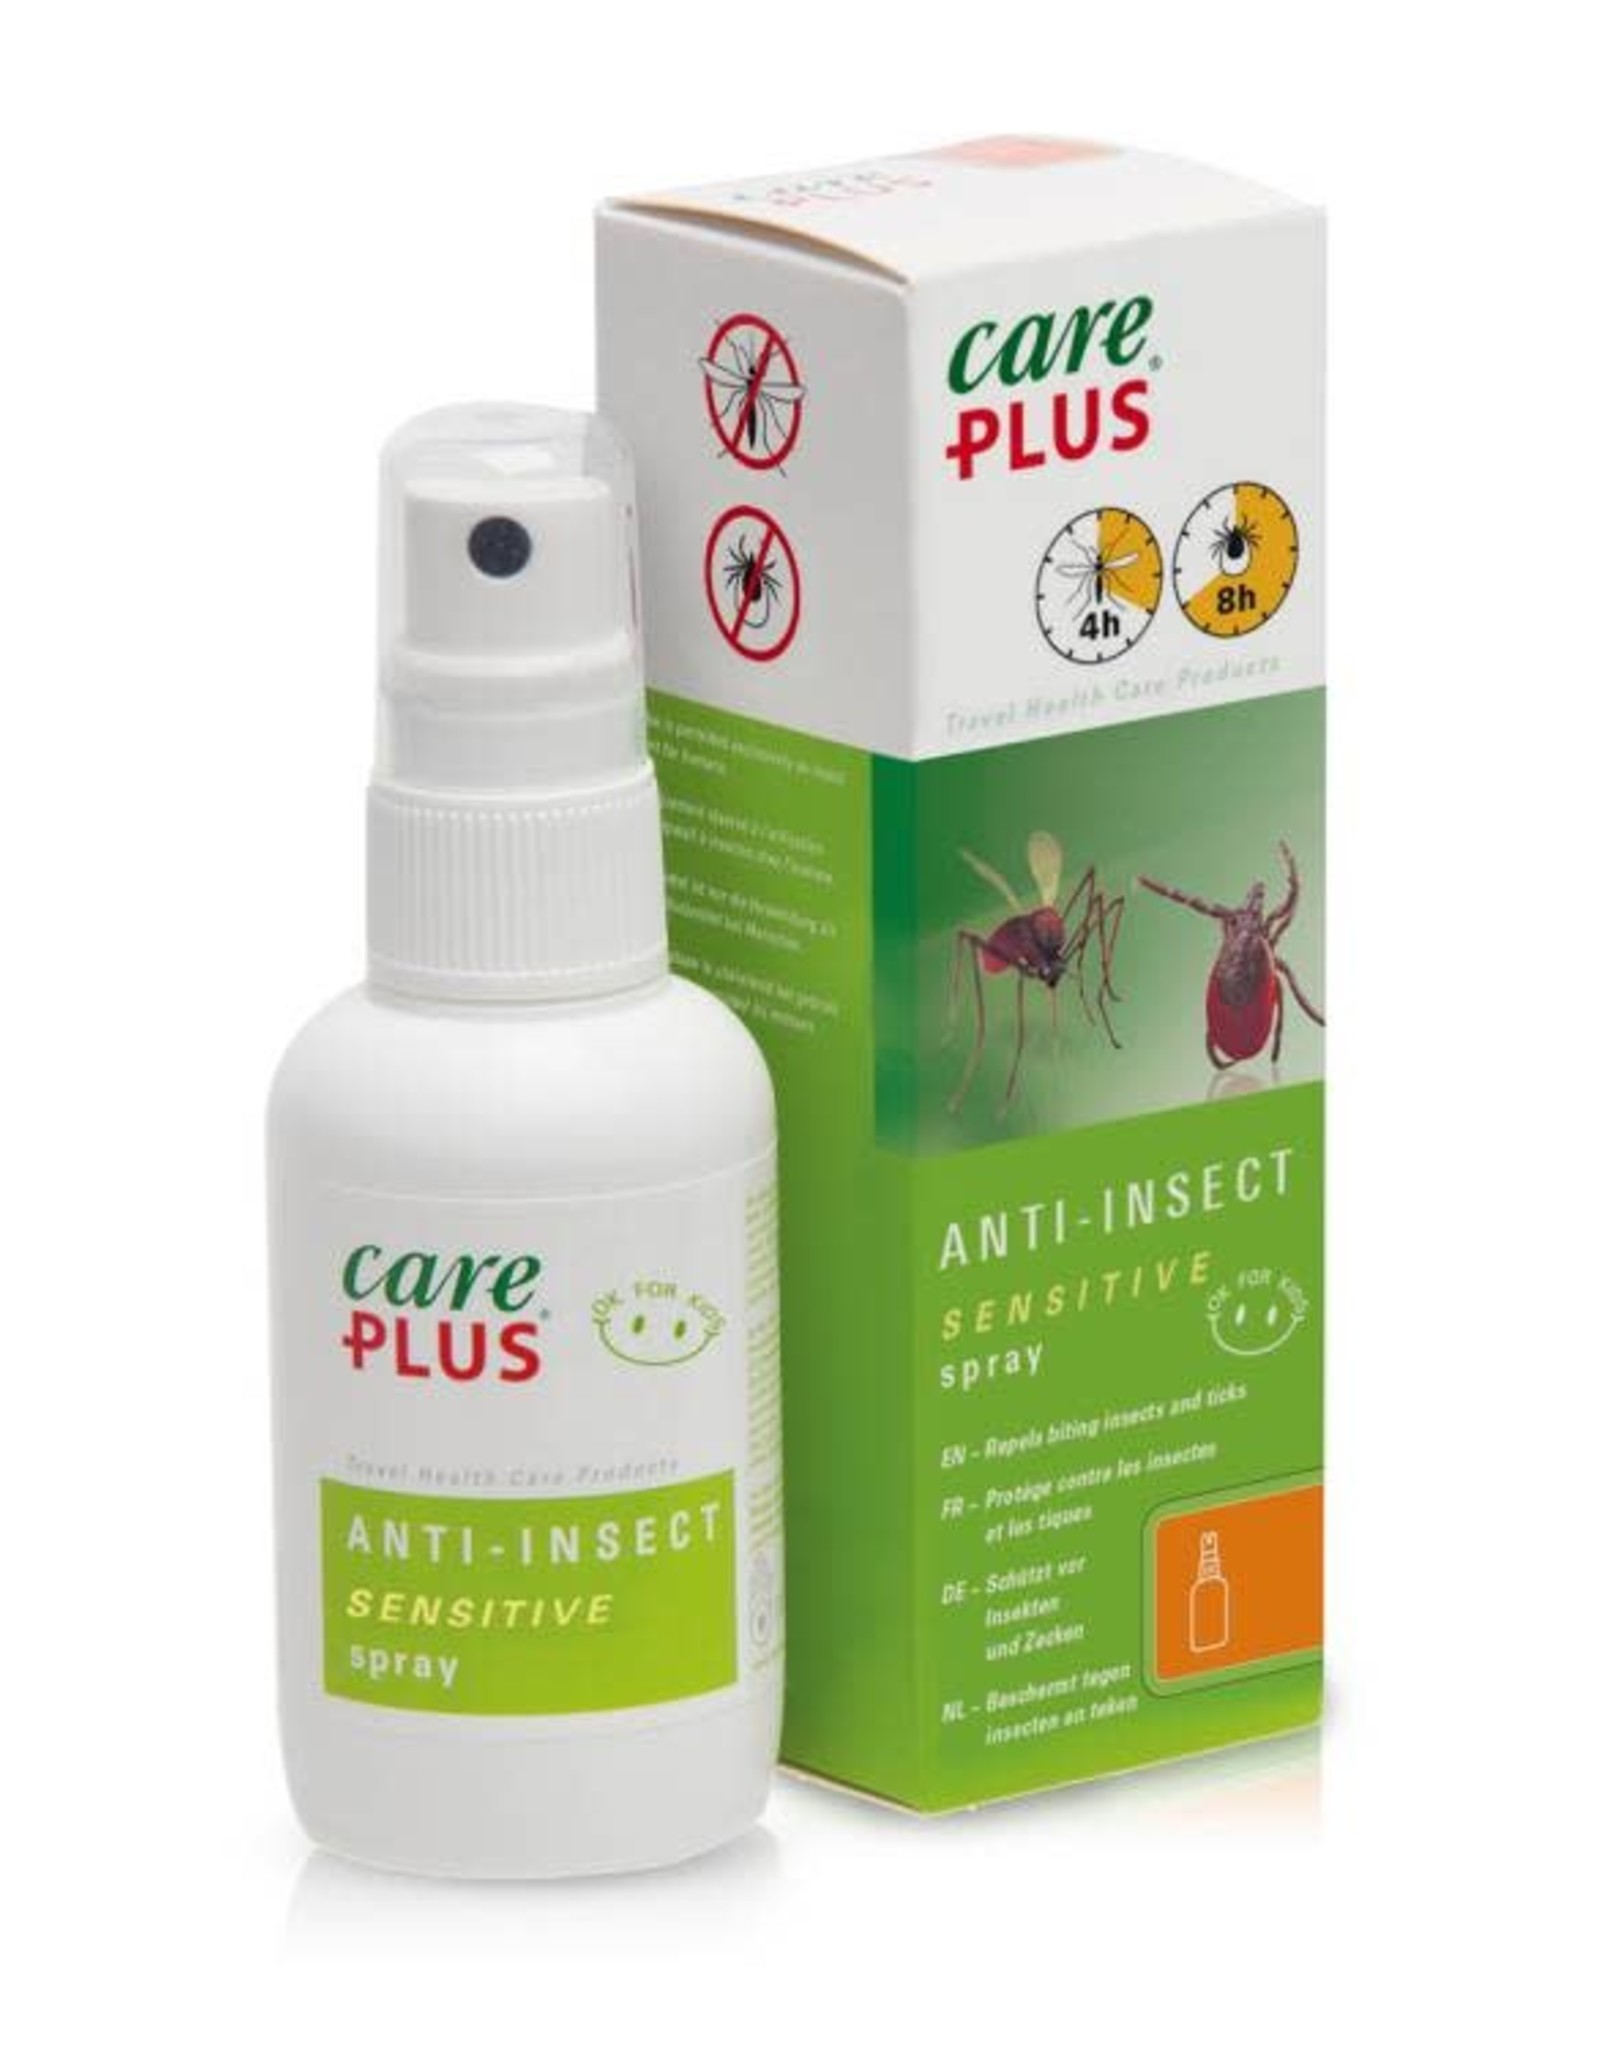 careplus Care Plus® Bio Anti-Insect Icaridin Spray - 8h protecgtion - 60ml